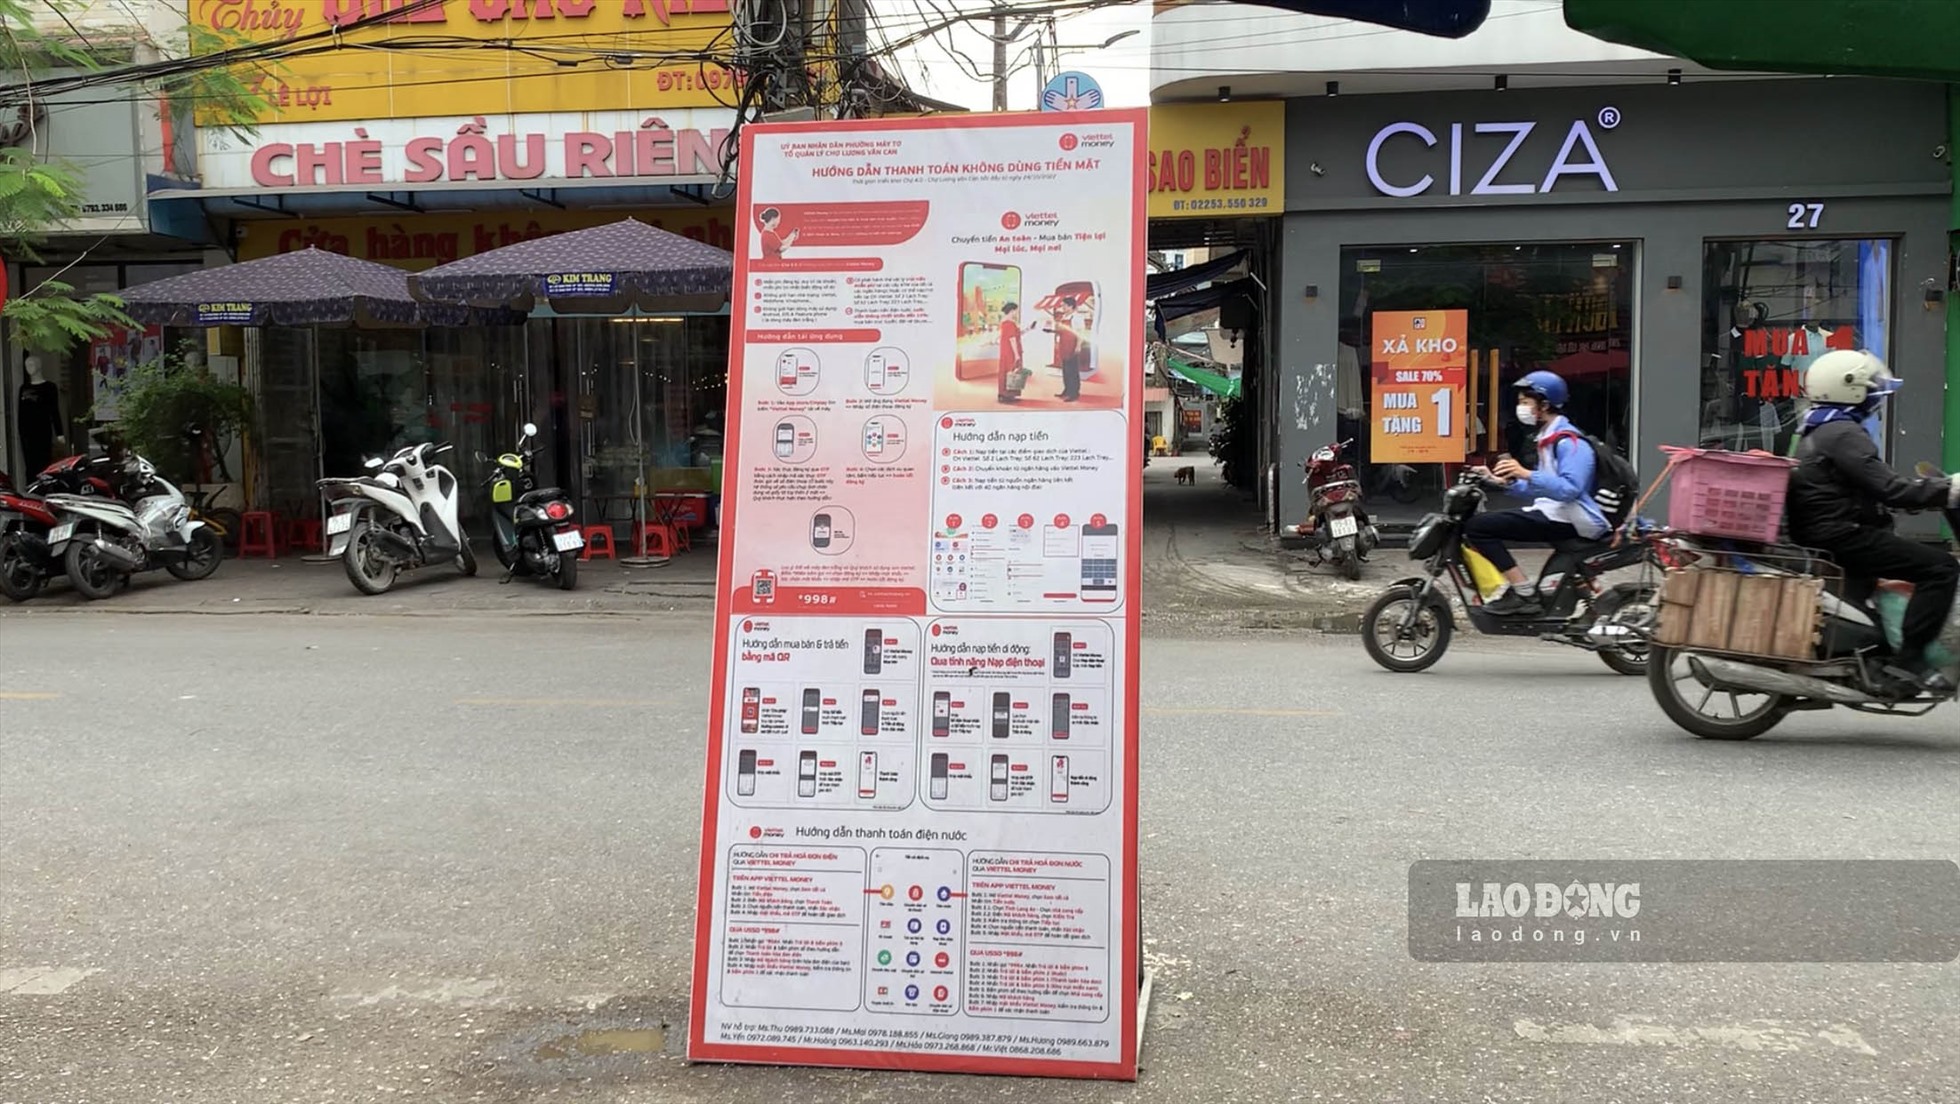 Độc đáo mô hình Chợ 40  Đi chợ không cần dùng tiền mặt  Công nghệ   Vietnam VietnamPlus